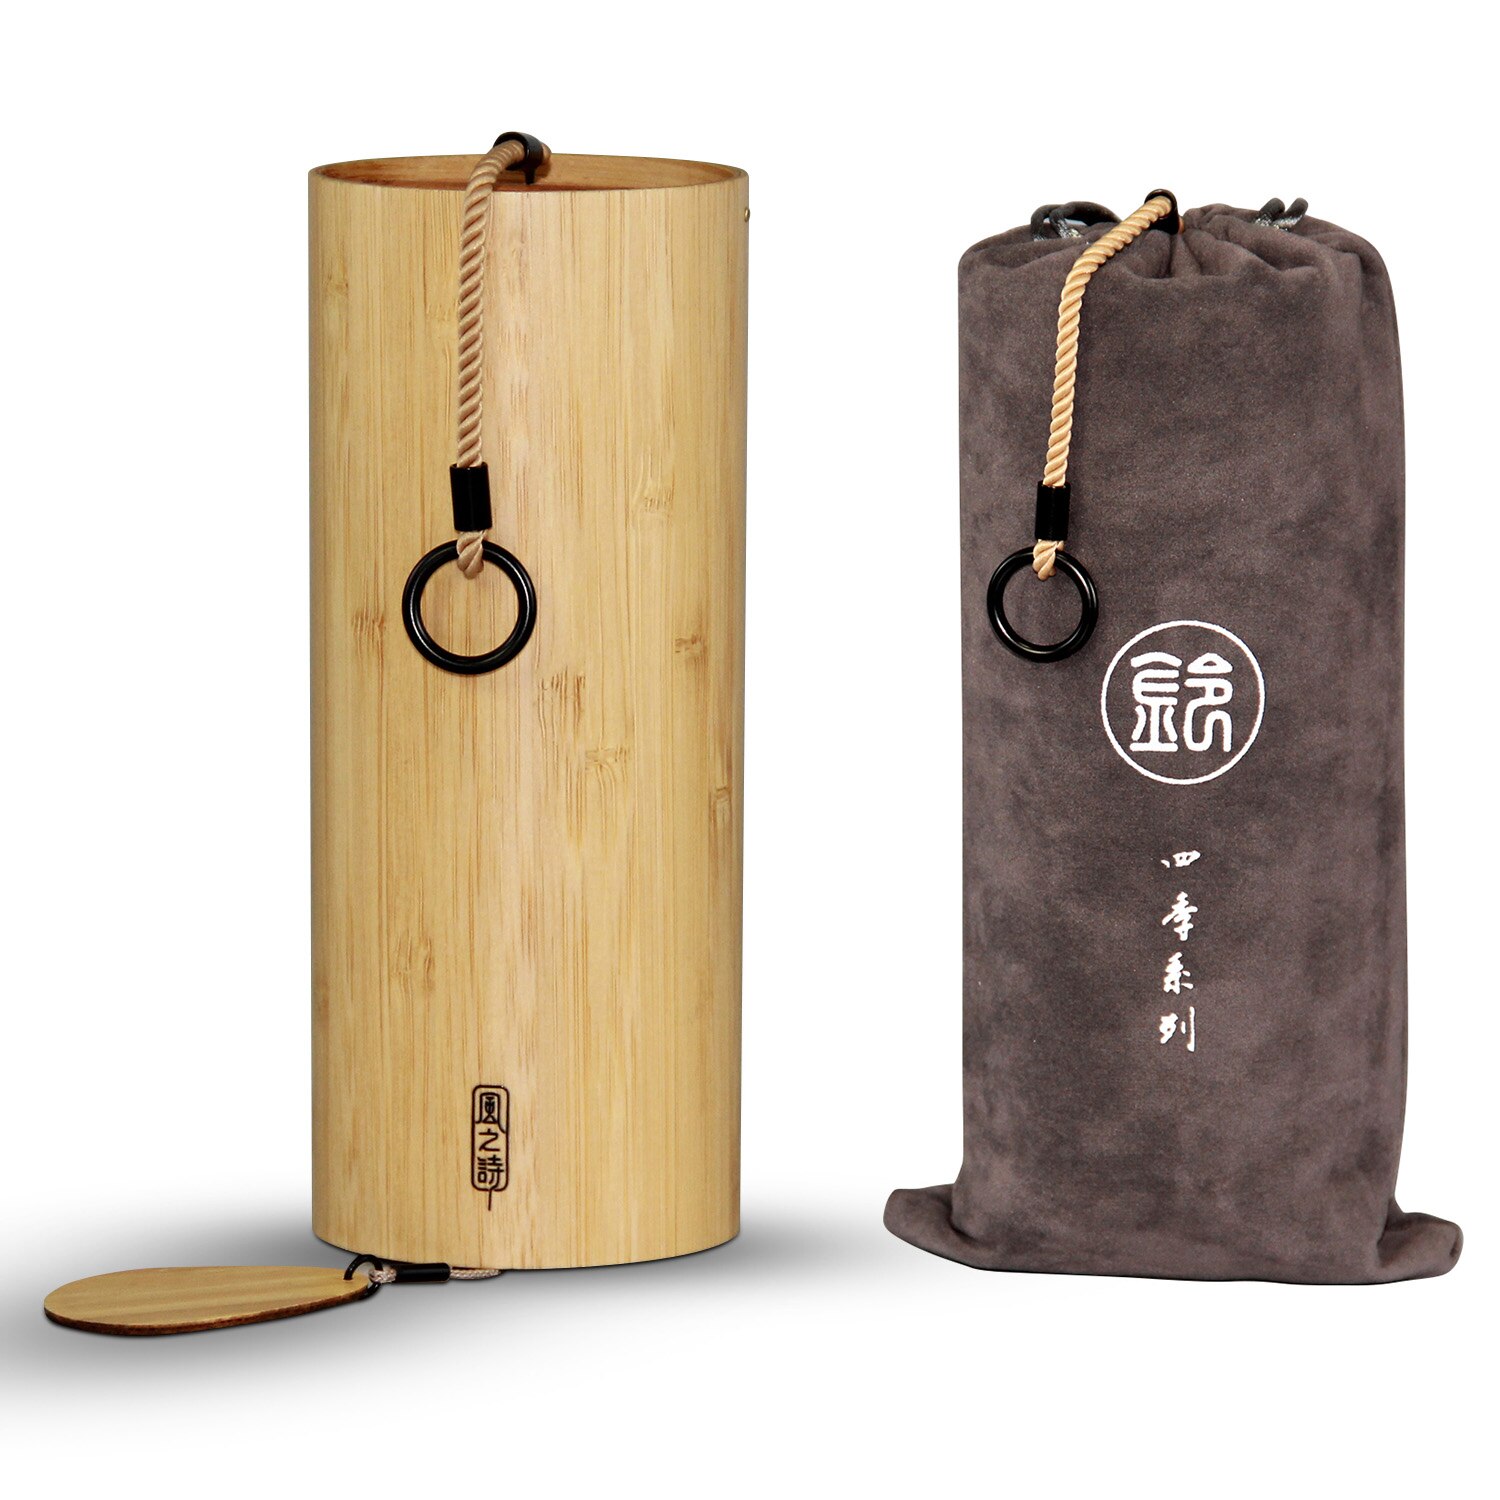 Bamboe Windgong Windchime Windbell Voor Outdoor Tuin Patio Home Decoratie Zen Meditatie Ontspanning Akkoord G-B-D-C